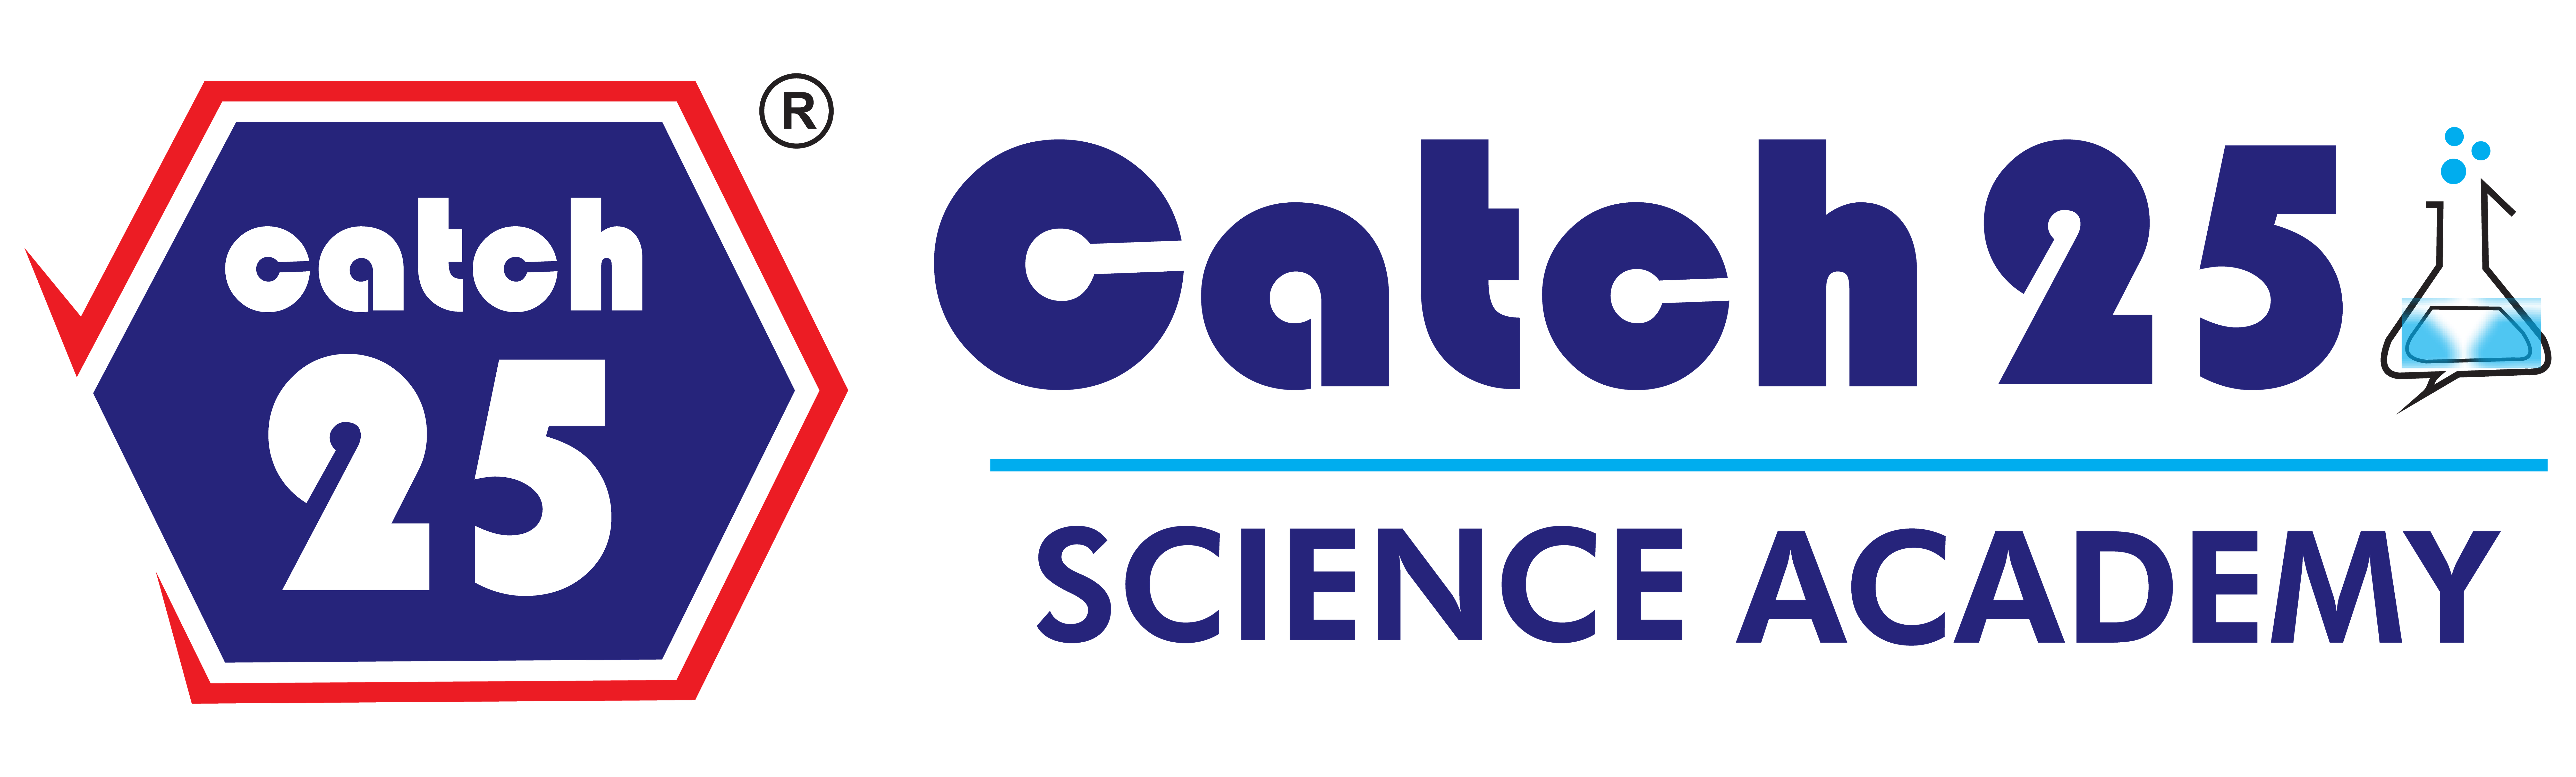 Catch 25 Science Academy logo